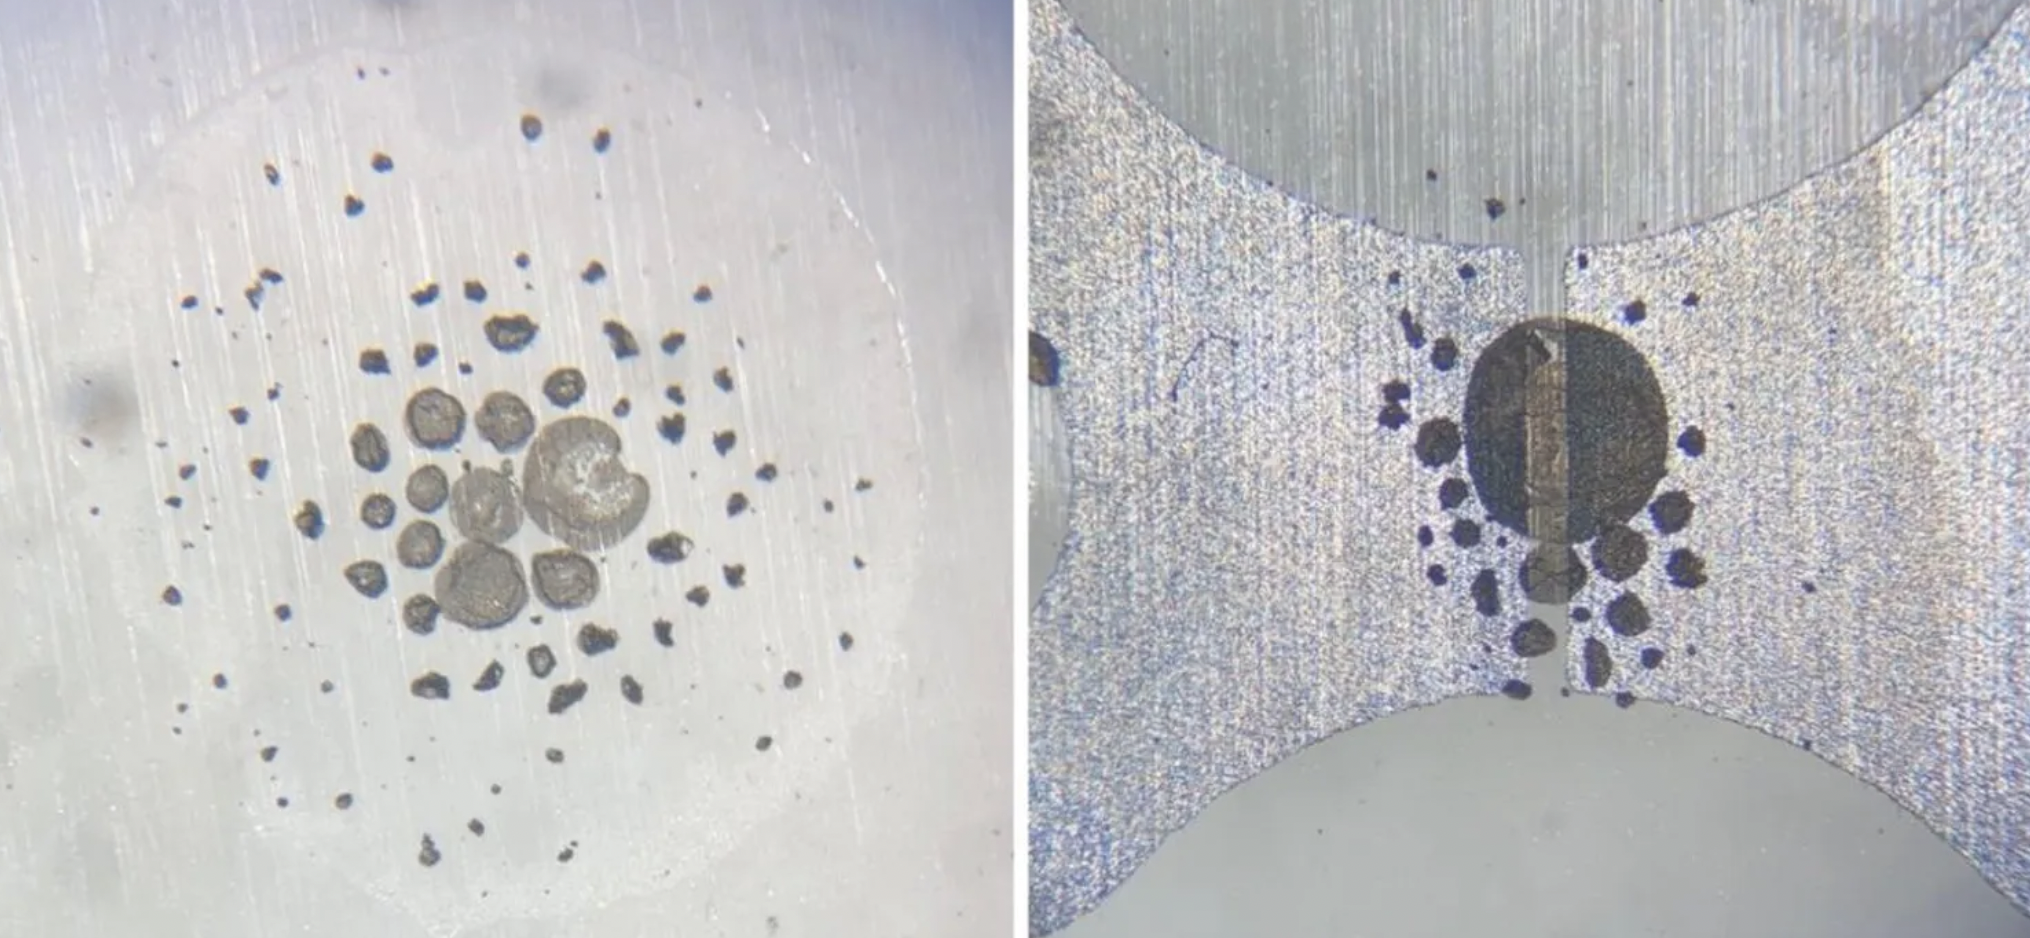 Mikrofotografie optyczne pokazują osadzanie się kropel grafenowych (po lewej) i montaż (po prawej) w wąskiej szczelinie elektrody (~100 µm)
